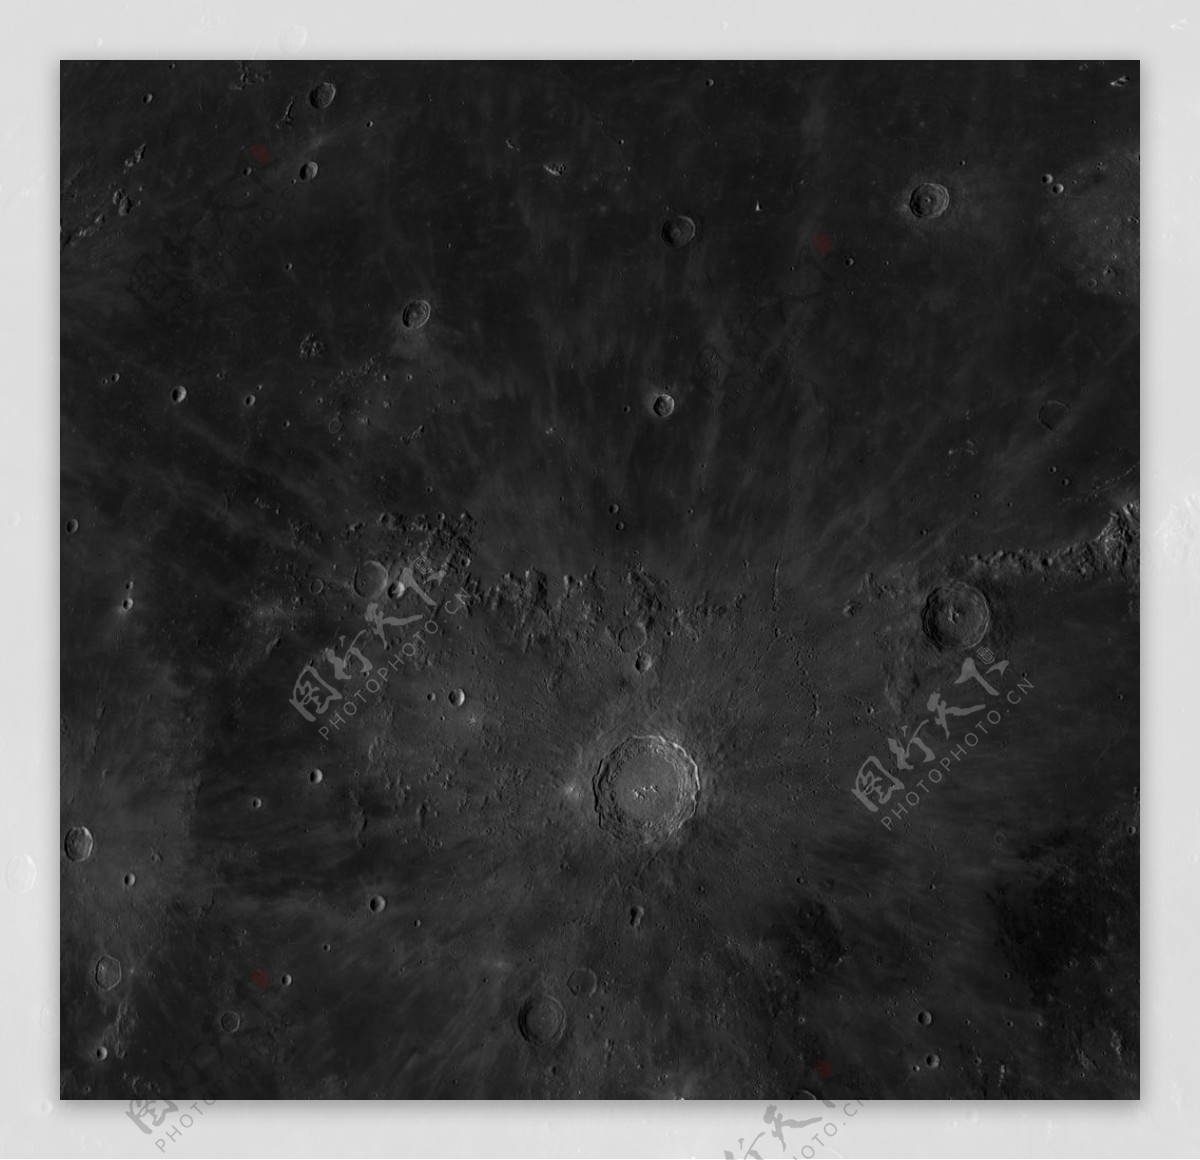 月球表面8K图片